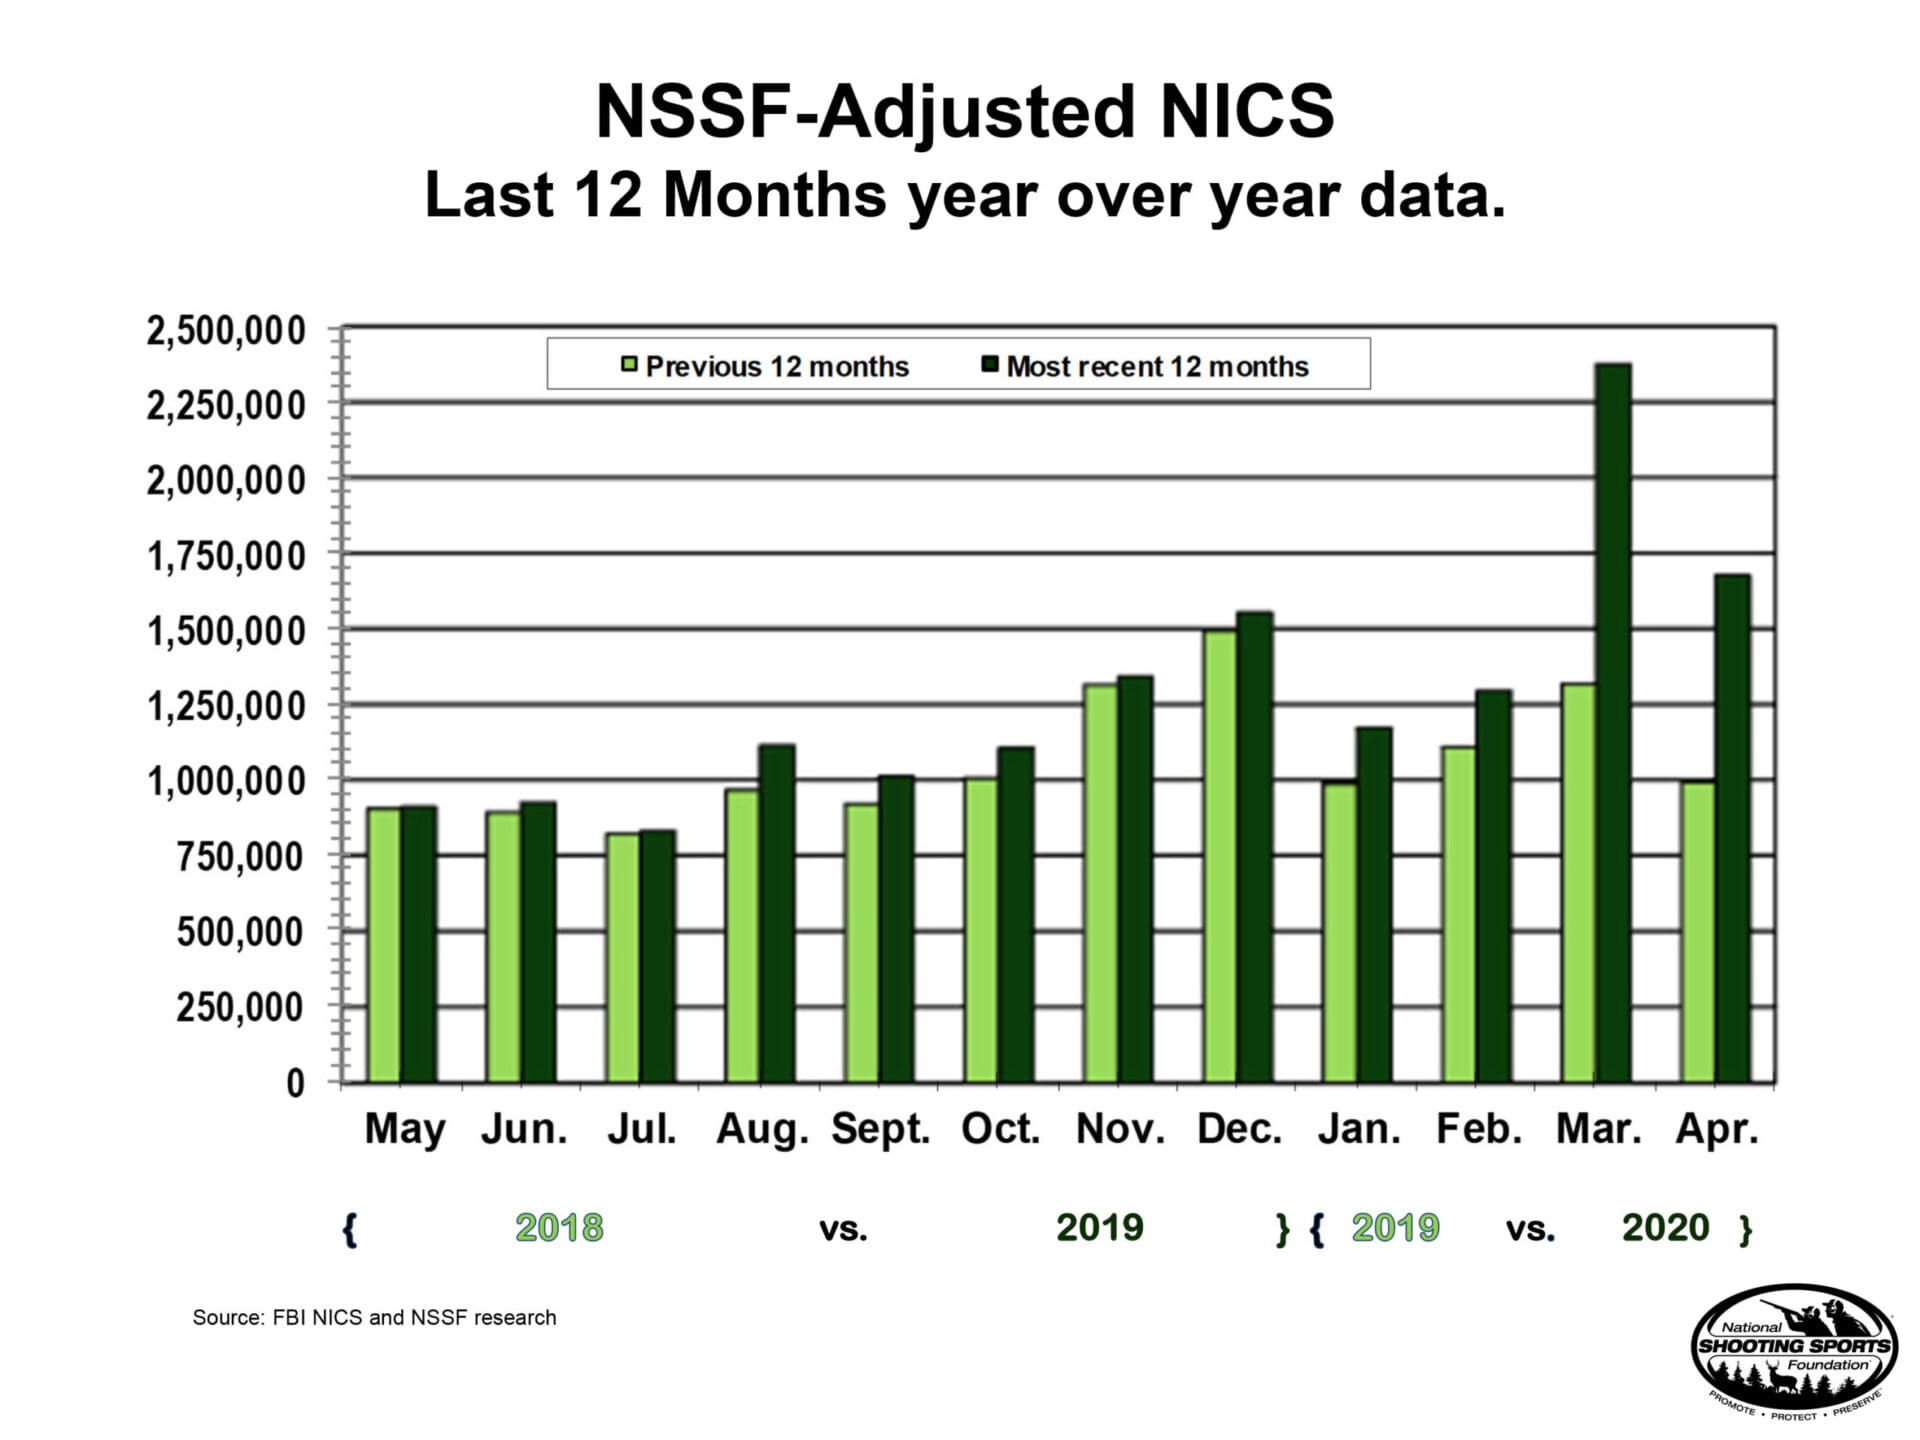 April adjusted NICS checks